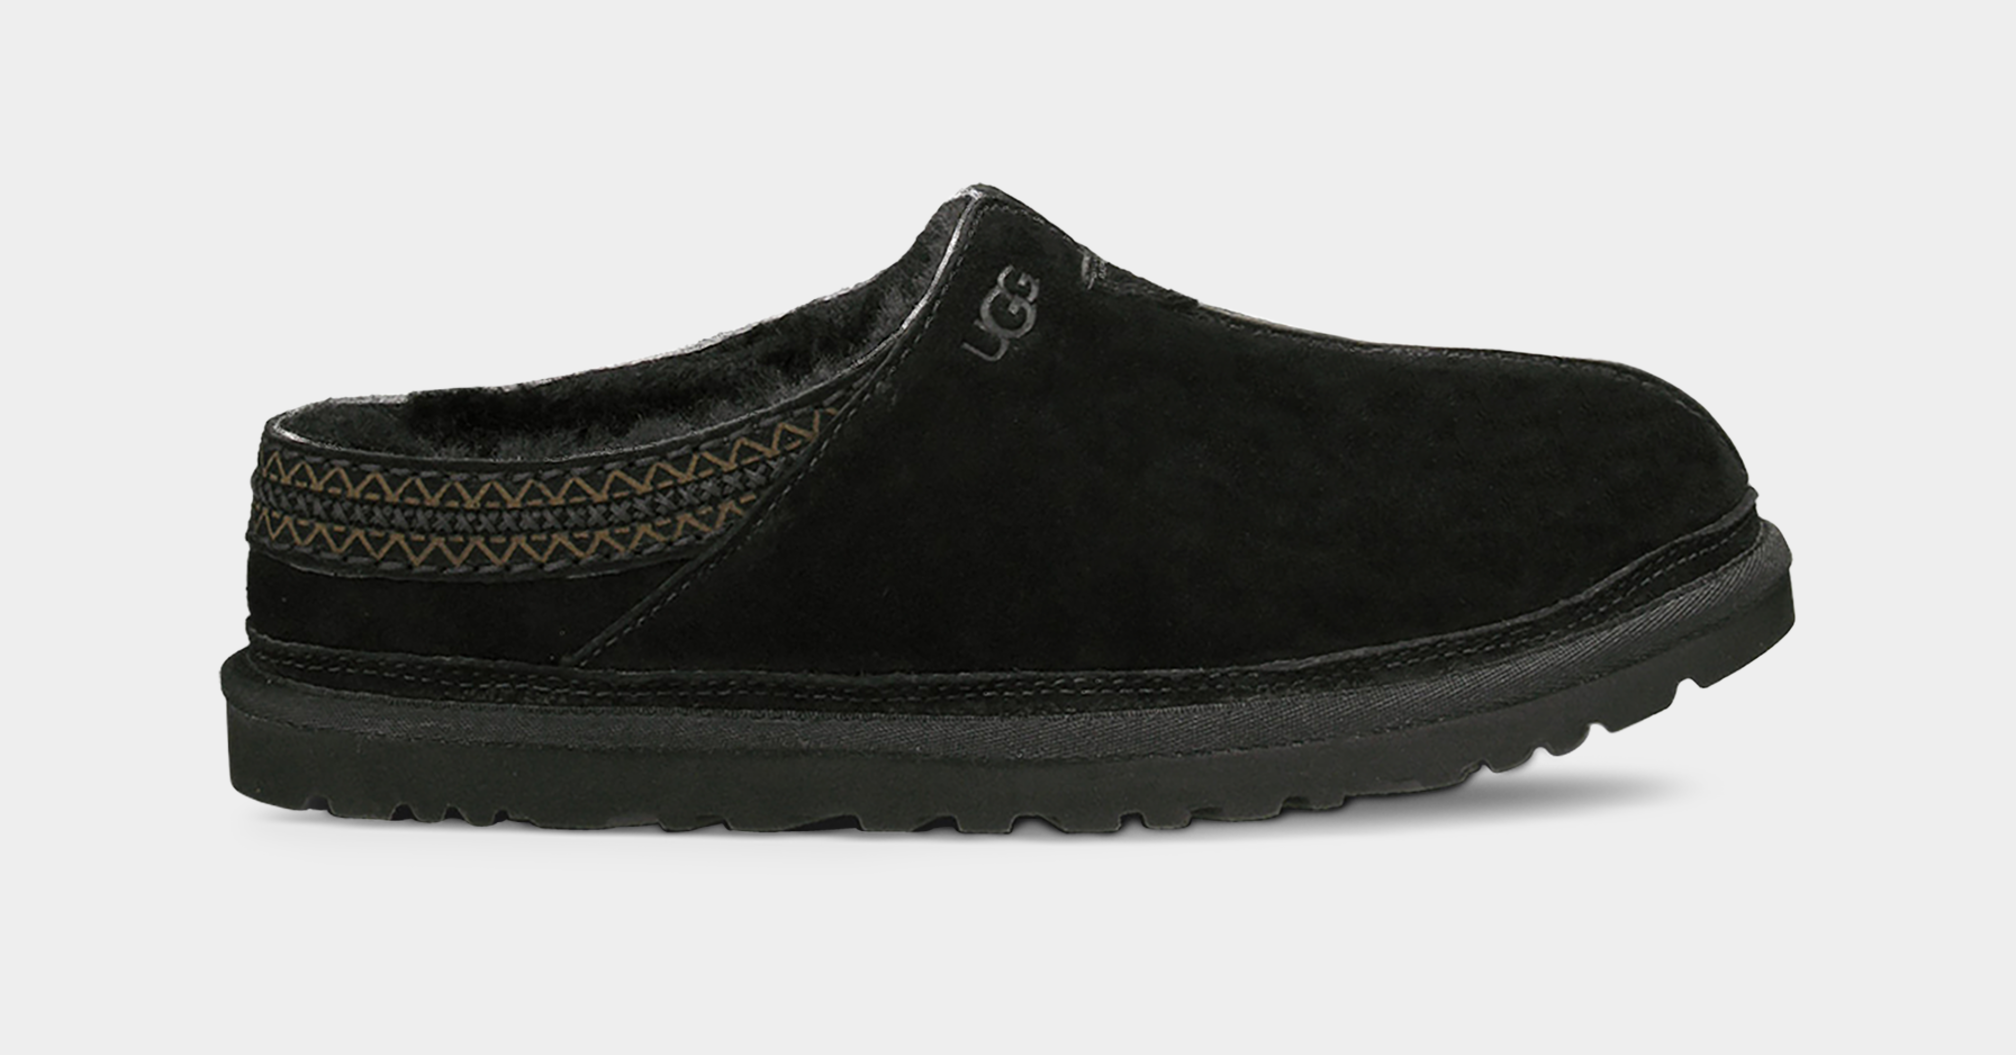 UGG® Neuman for Men | Modern Slip-On Shoes at UGG.com